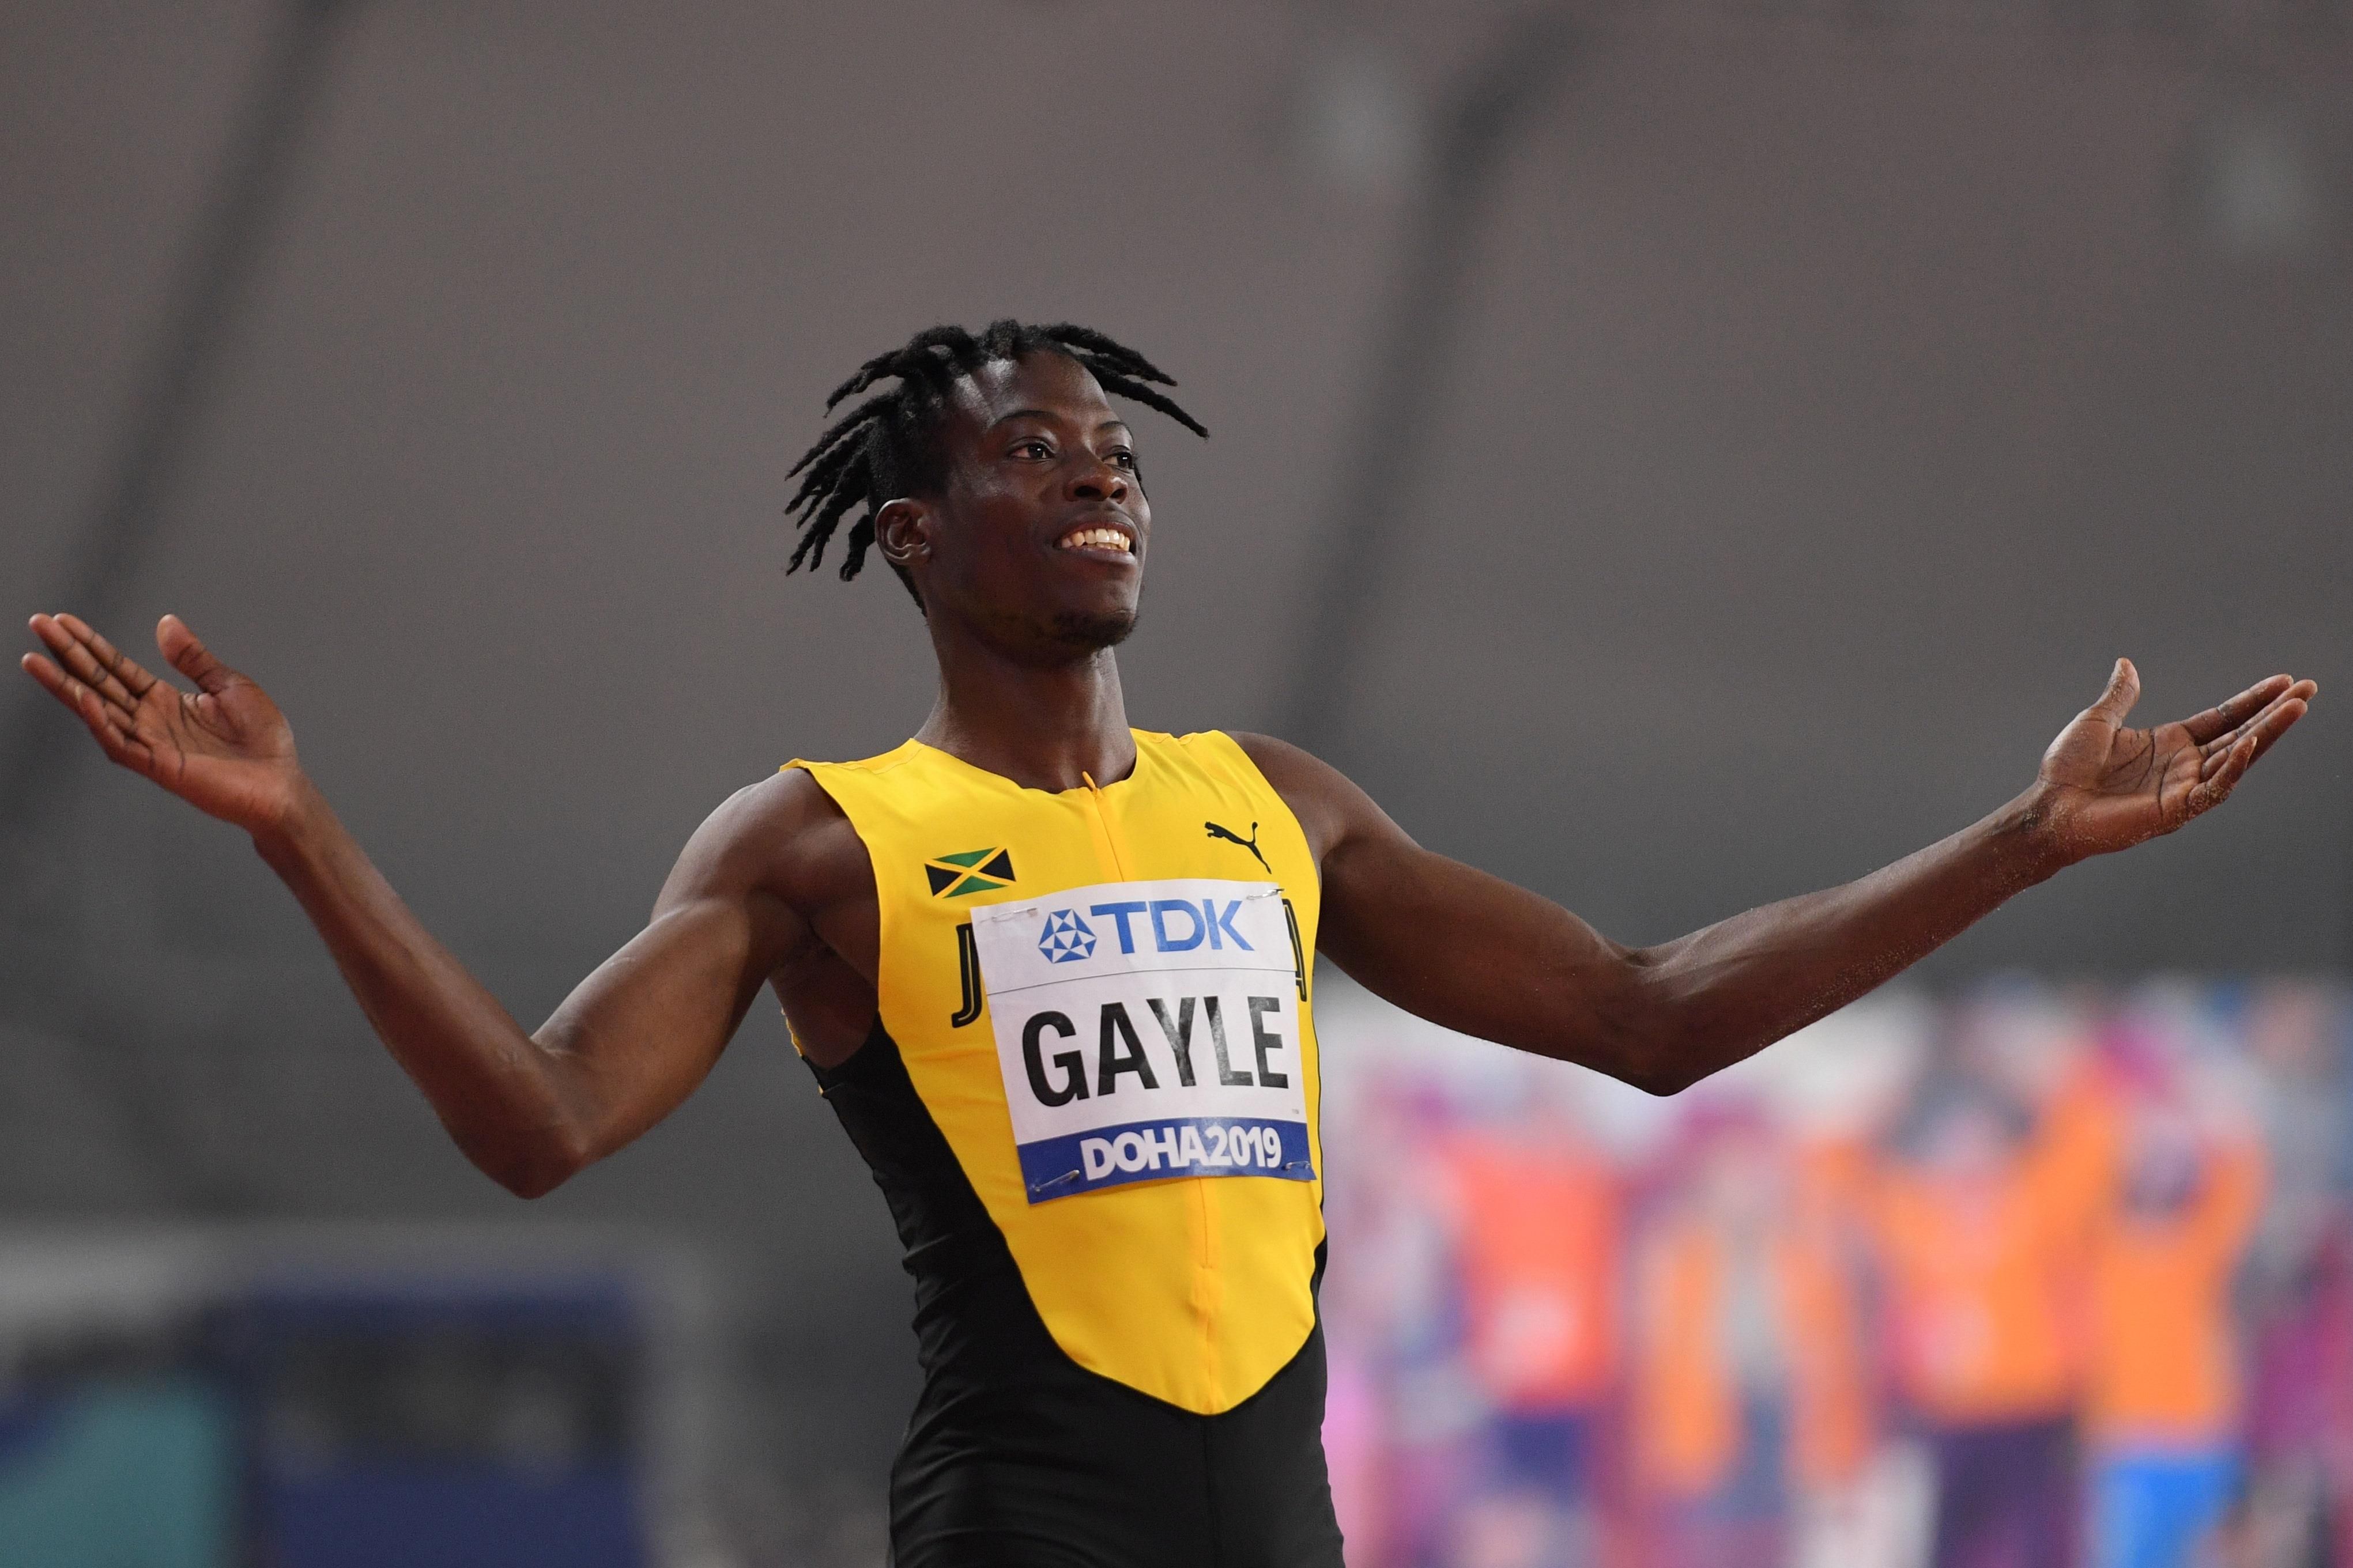 Tajay Gayle at the 2019 World Championships